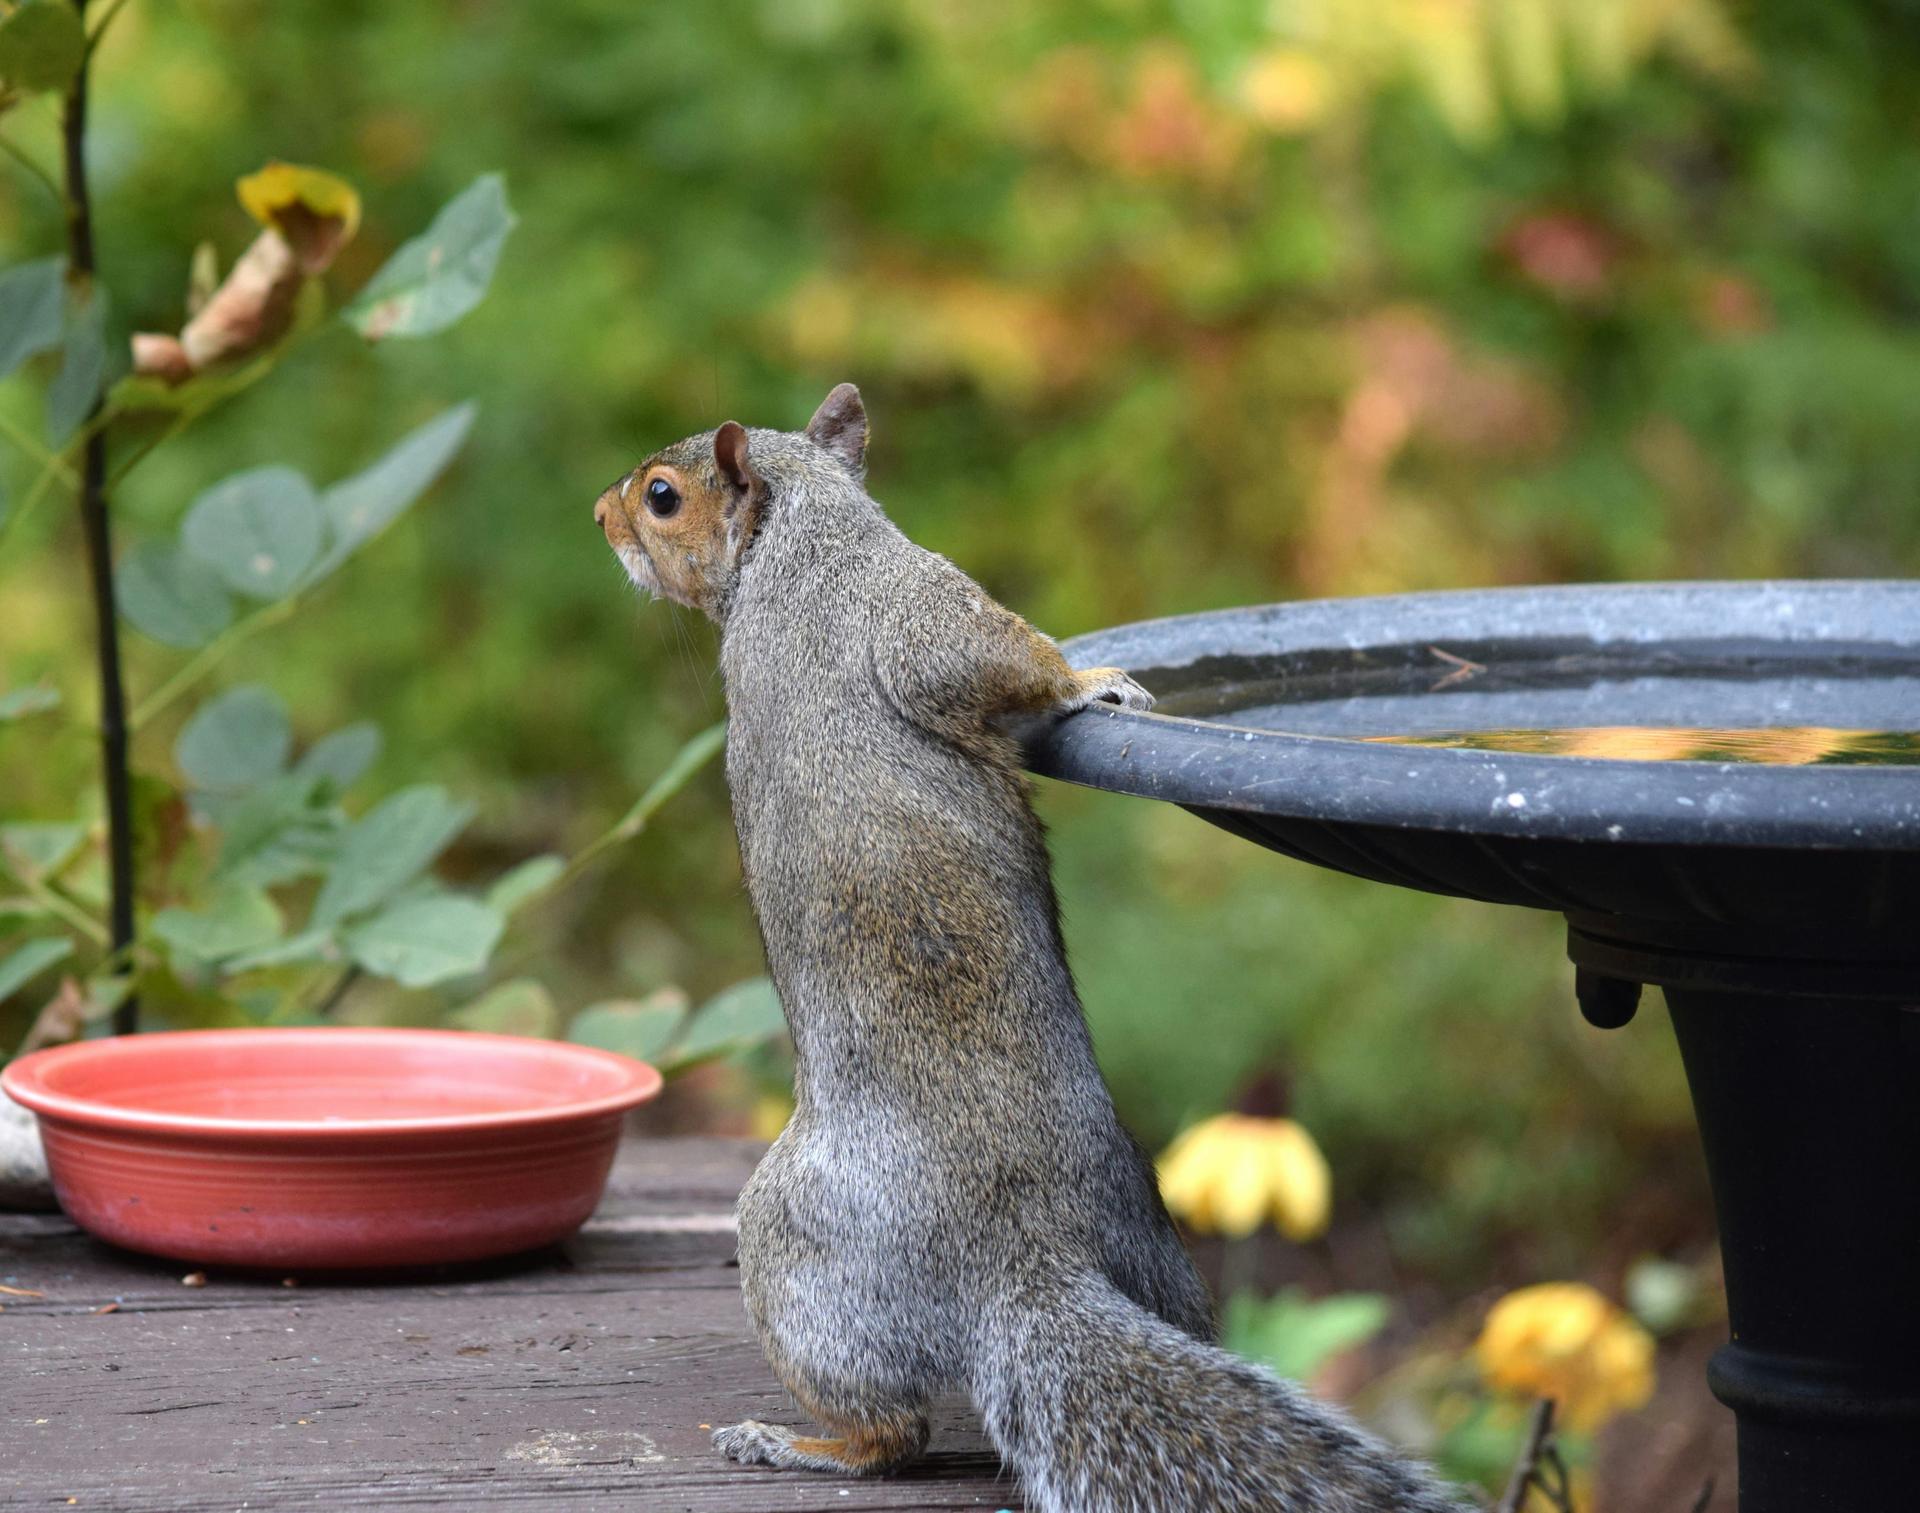 Squirrel Drinking